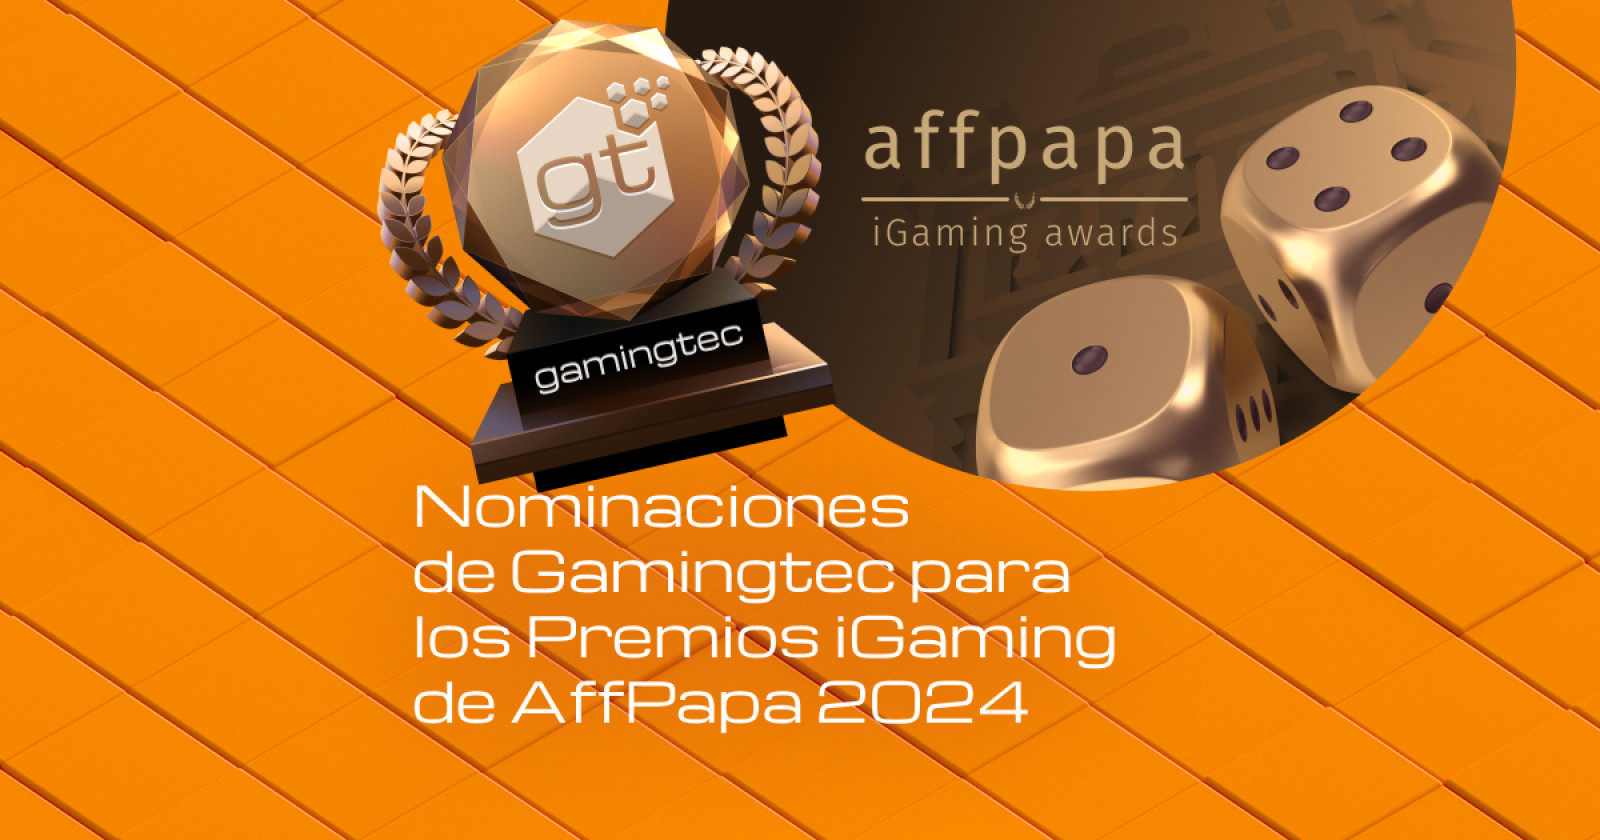 Gamingtec ha sido nominada a los Premios iGaming de AffPapa